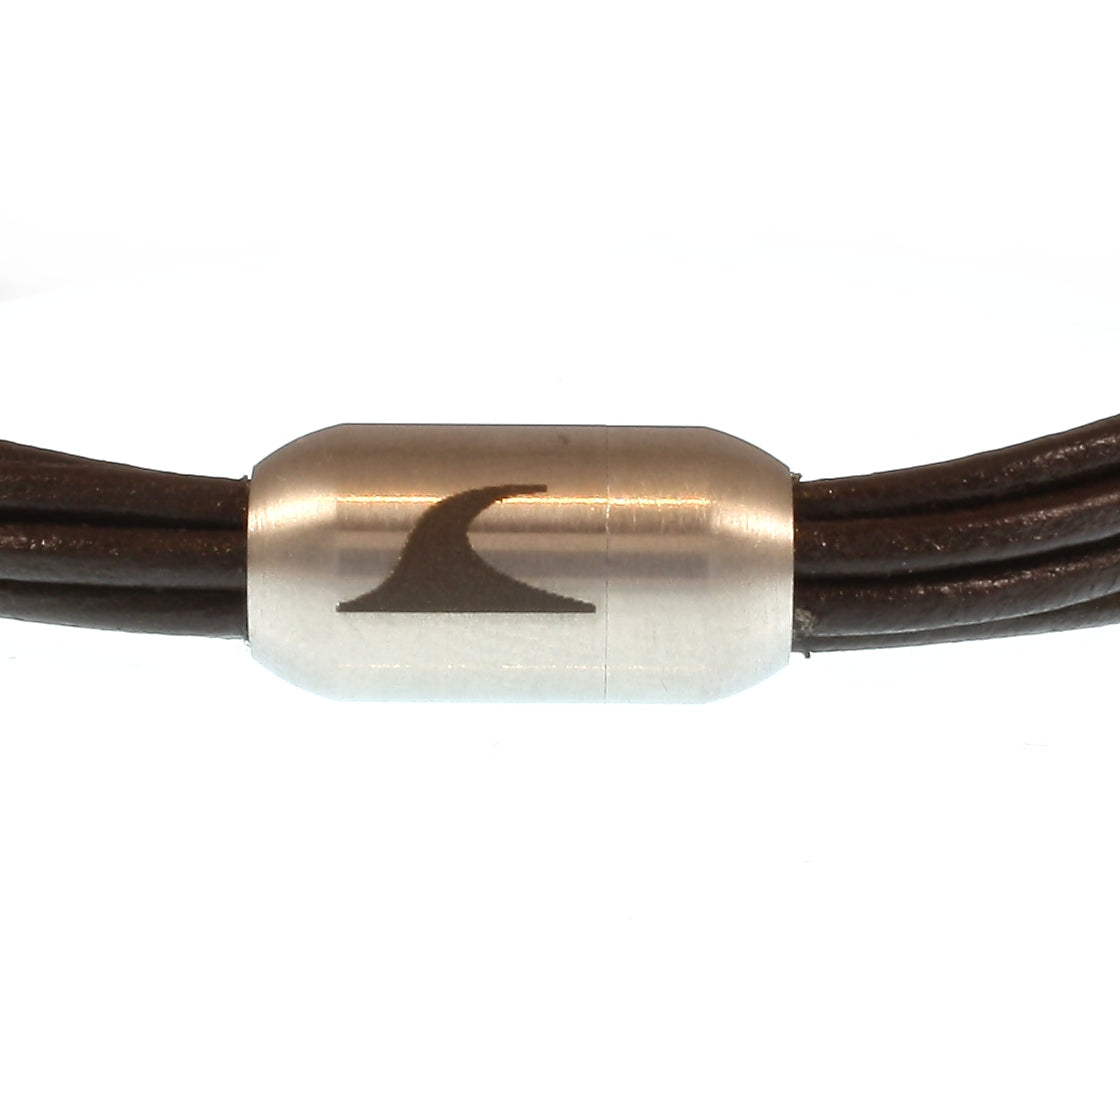 Damen-Leder-armband-fem-braun-silber-Edelstahlverschluss-detail-wavepirate-shop-r